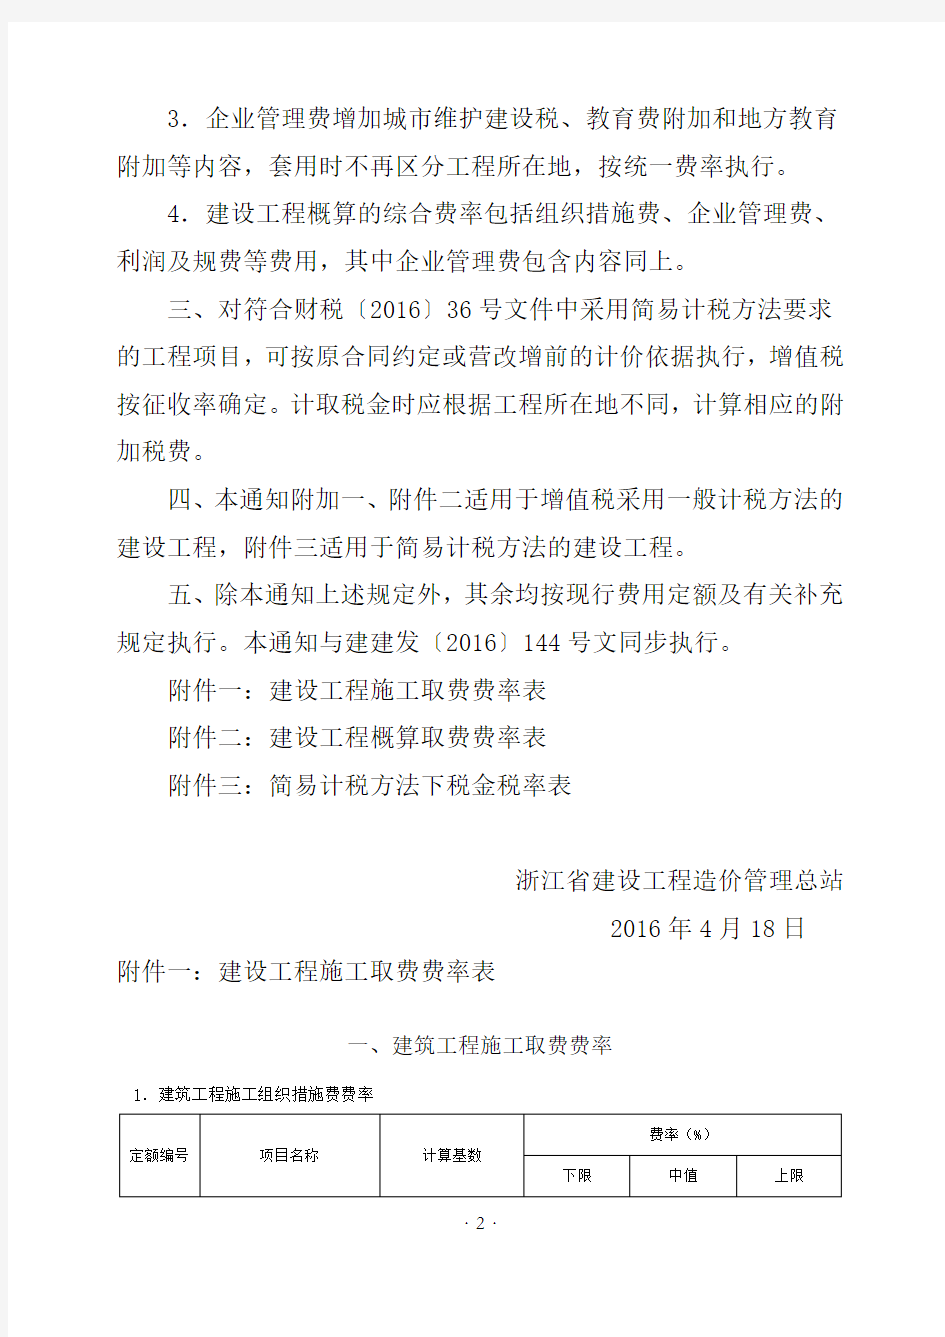 关于发布营改增后浙江省建设工程施工取费费率的通知